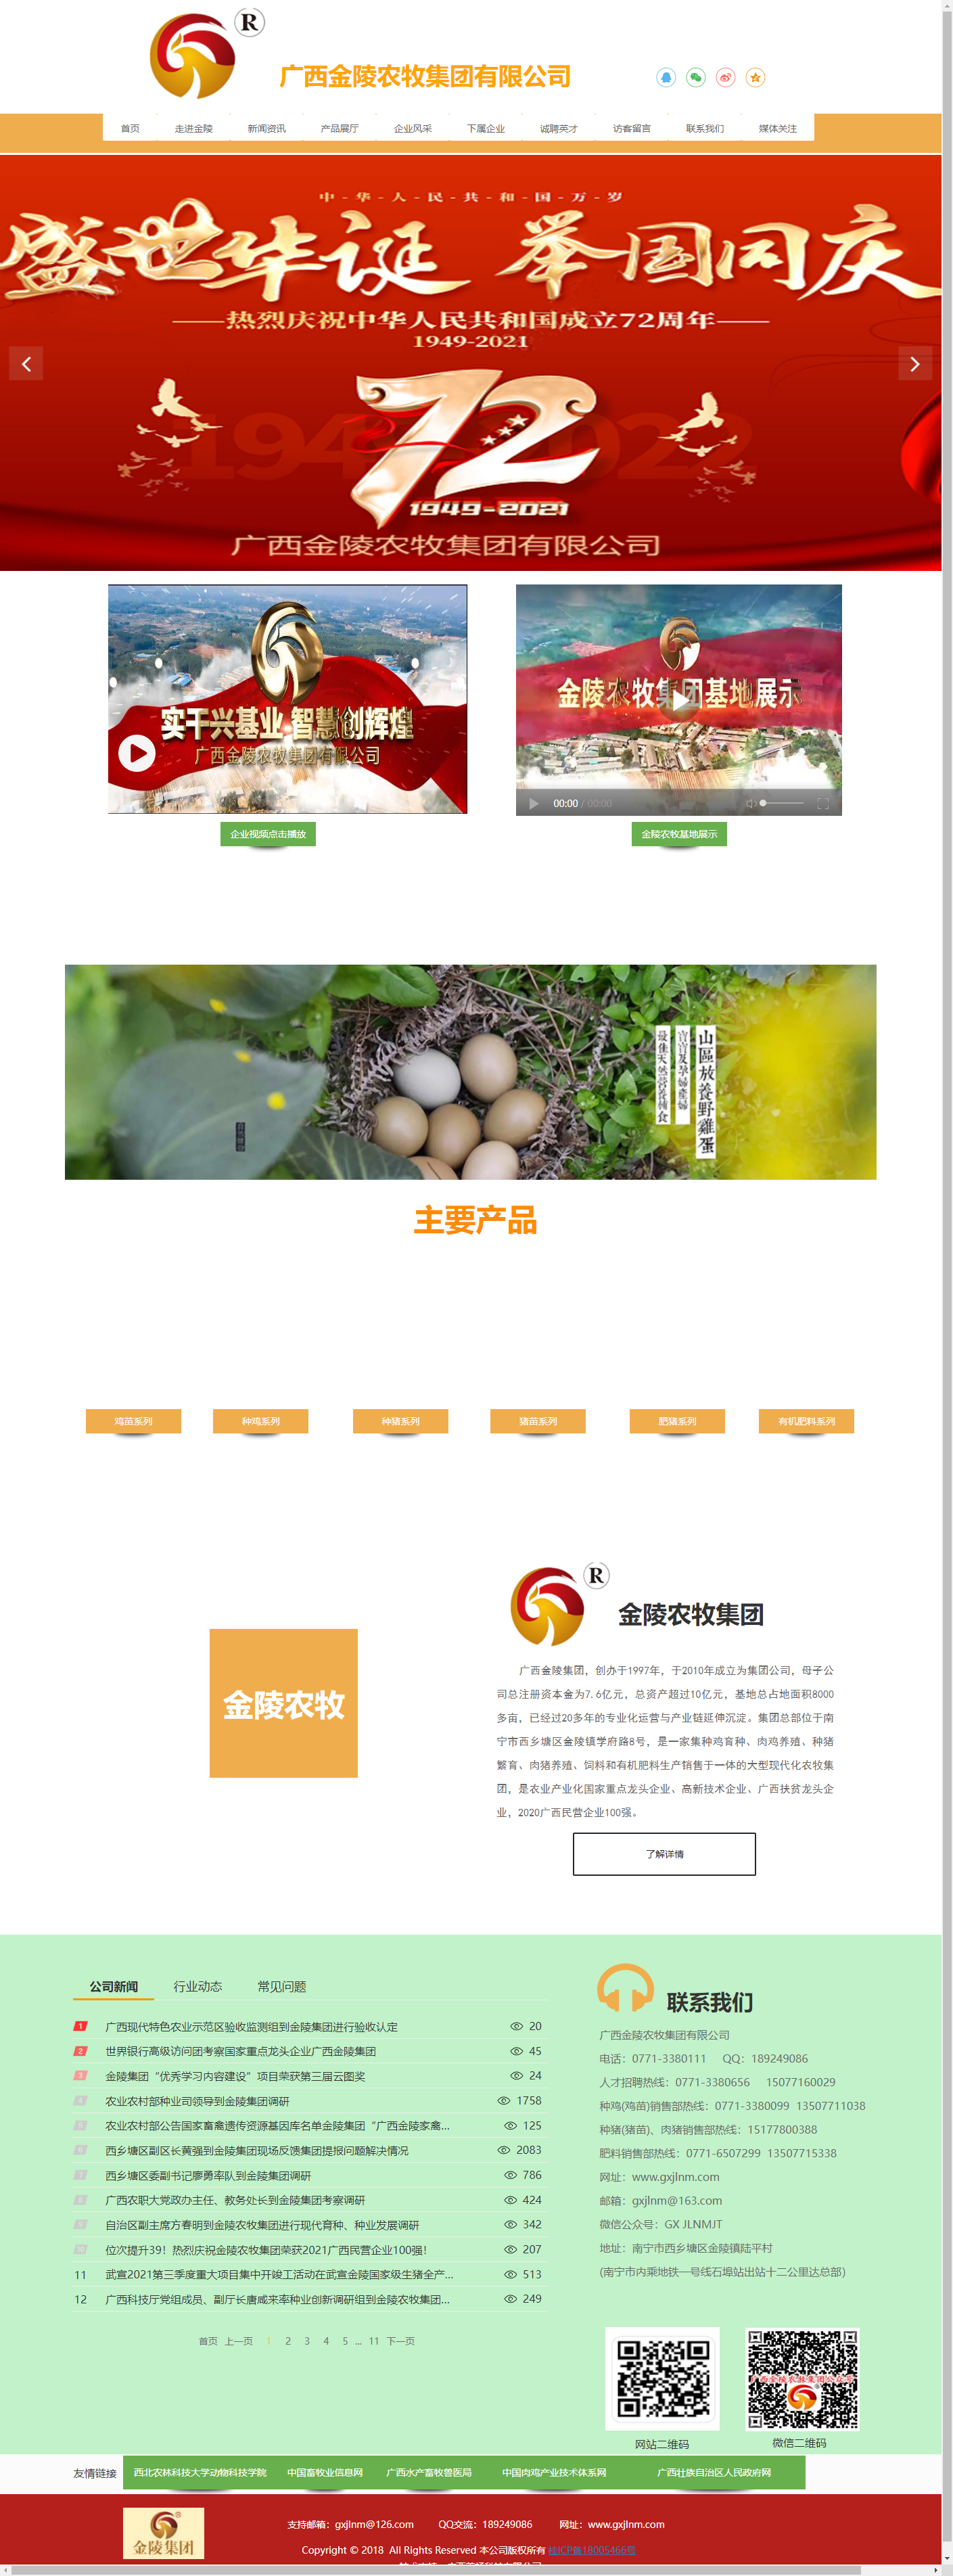 广西金陵农牧集团有限公司网站案例